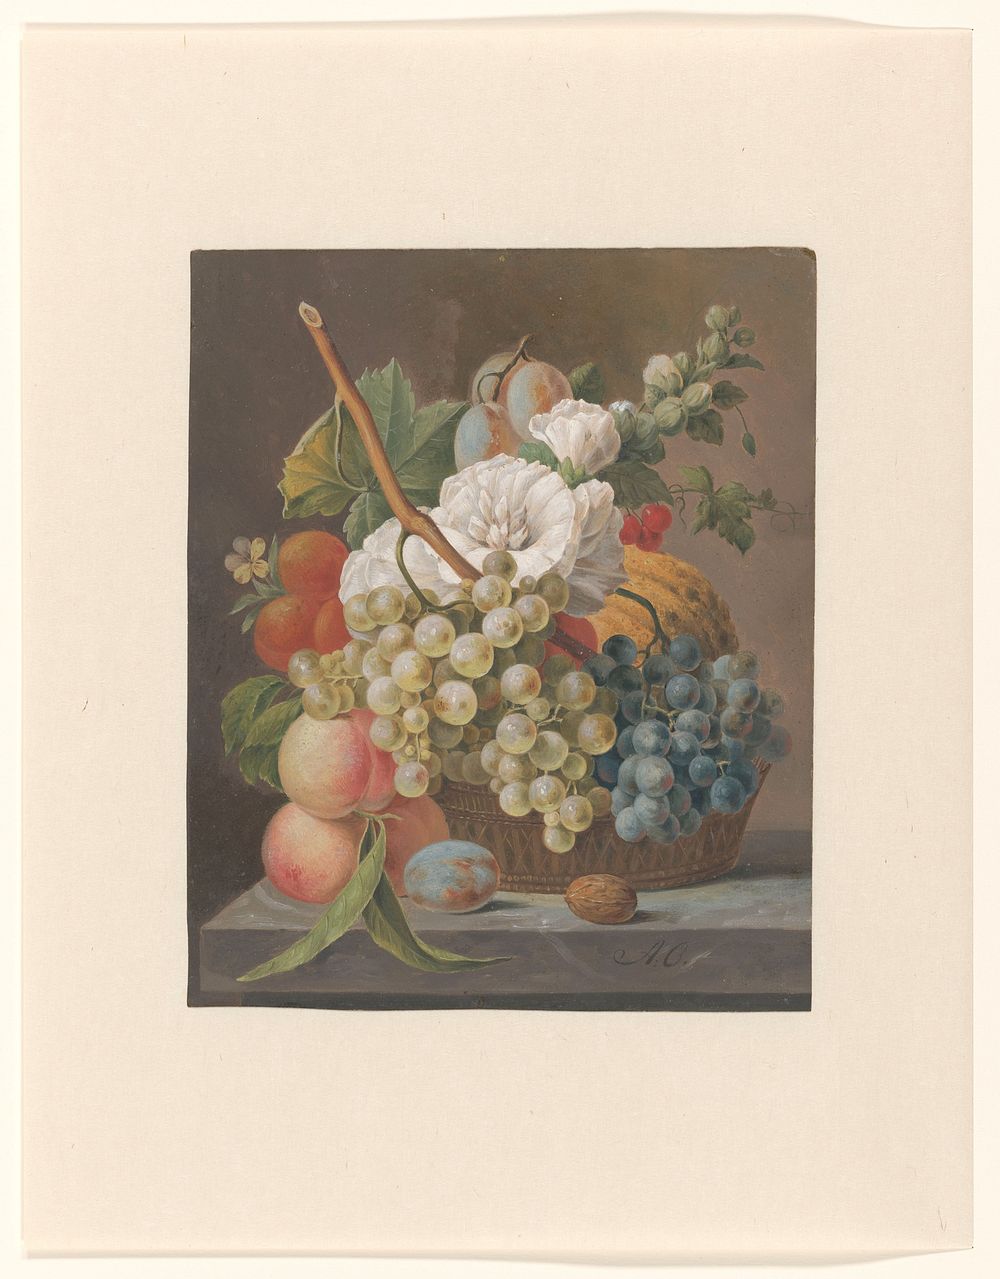 Stilleven met bloemen en fruit in een mandje (ca. 1791) by Anthony Oberman. 